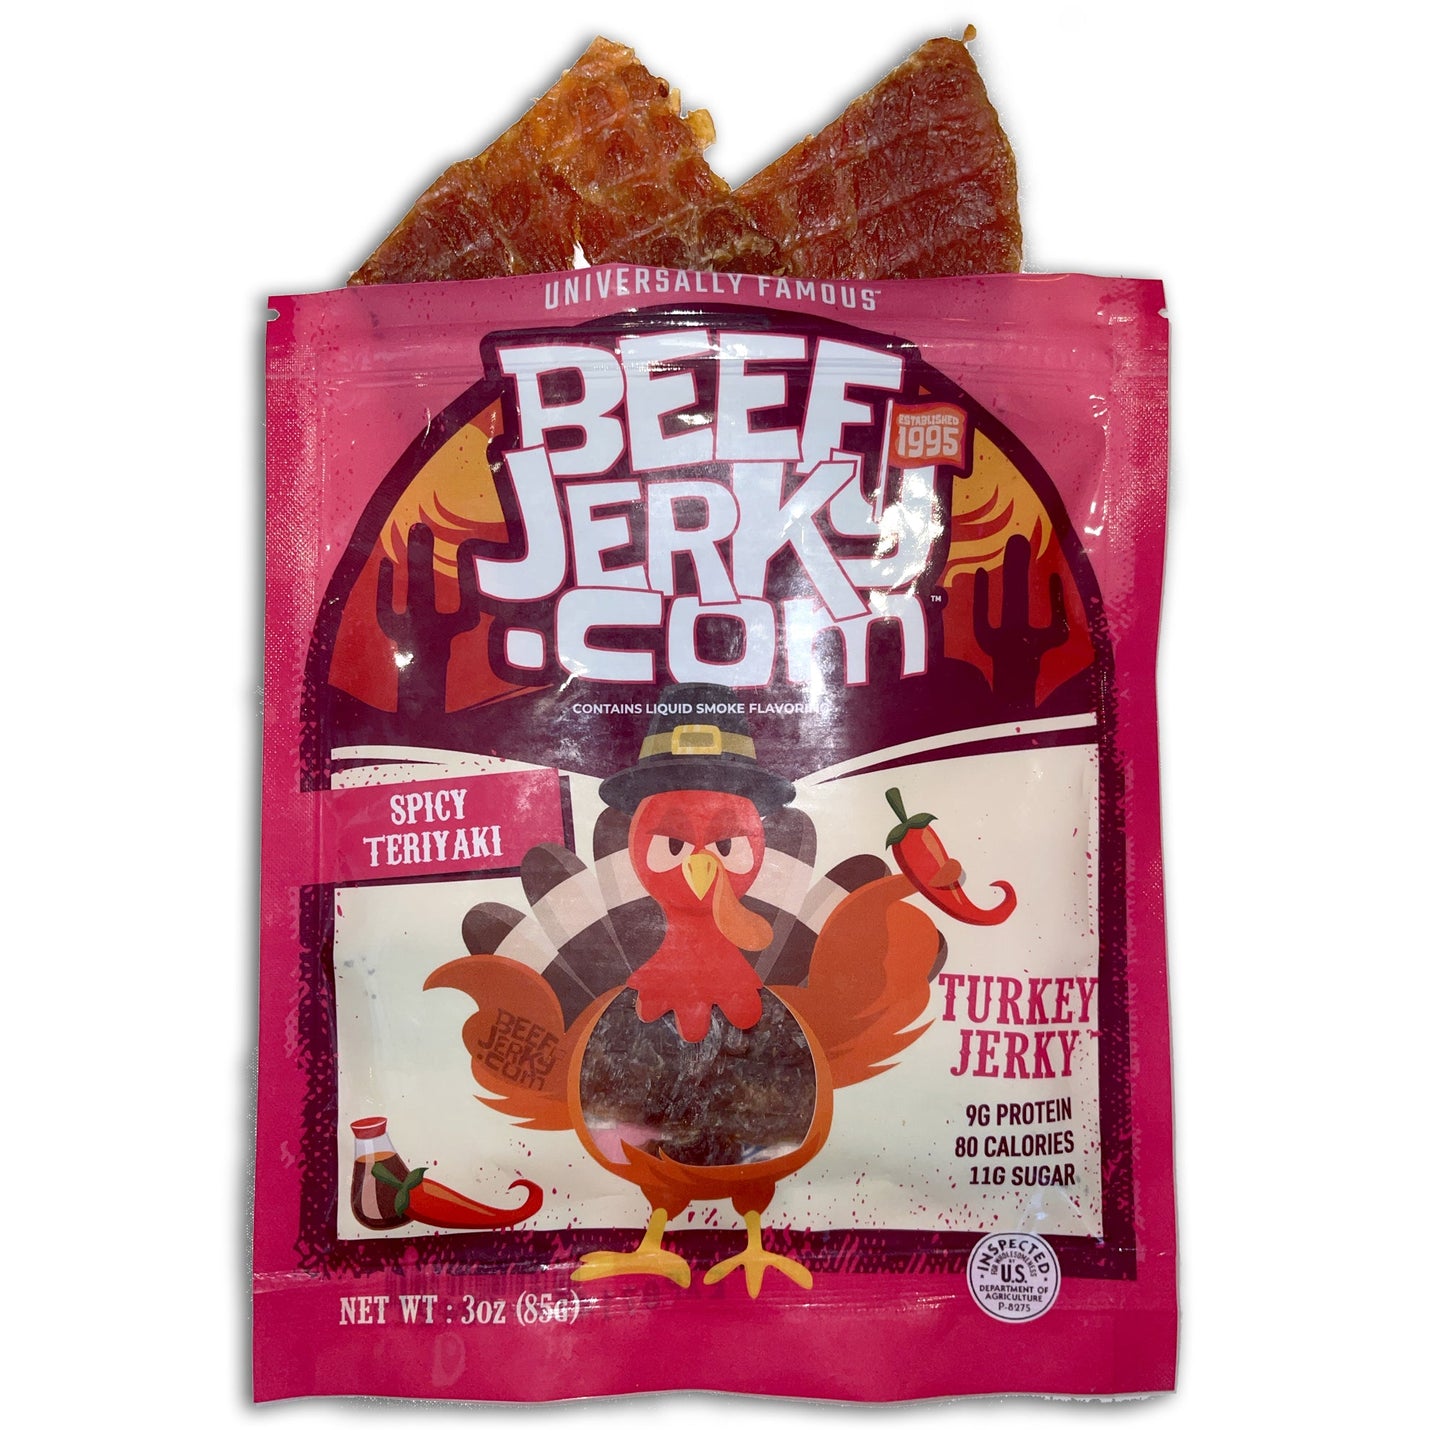 Spicy Teriyaki Turkey Jerky (3oz bag) by BeefJerky.com